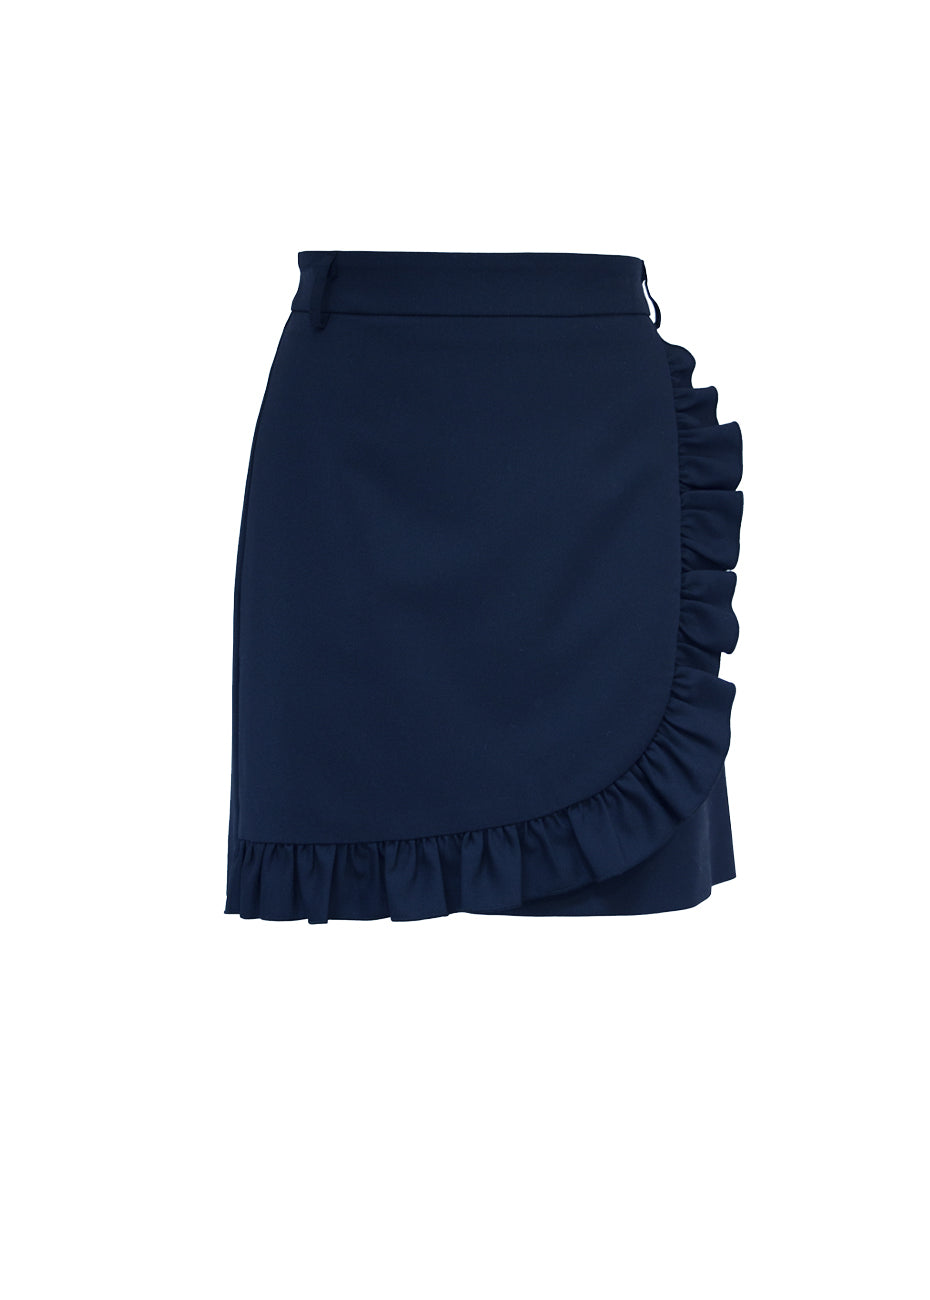 Ruffle Front Skirt - Navy Pink Tartan